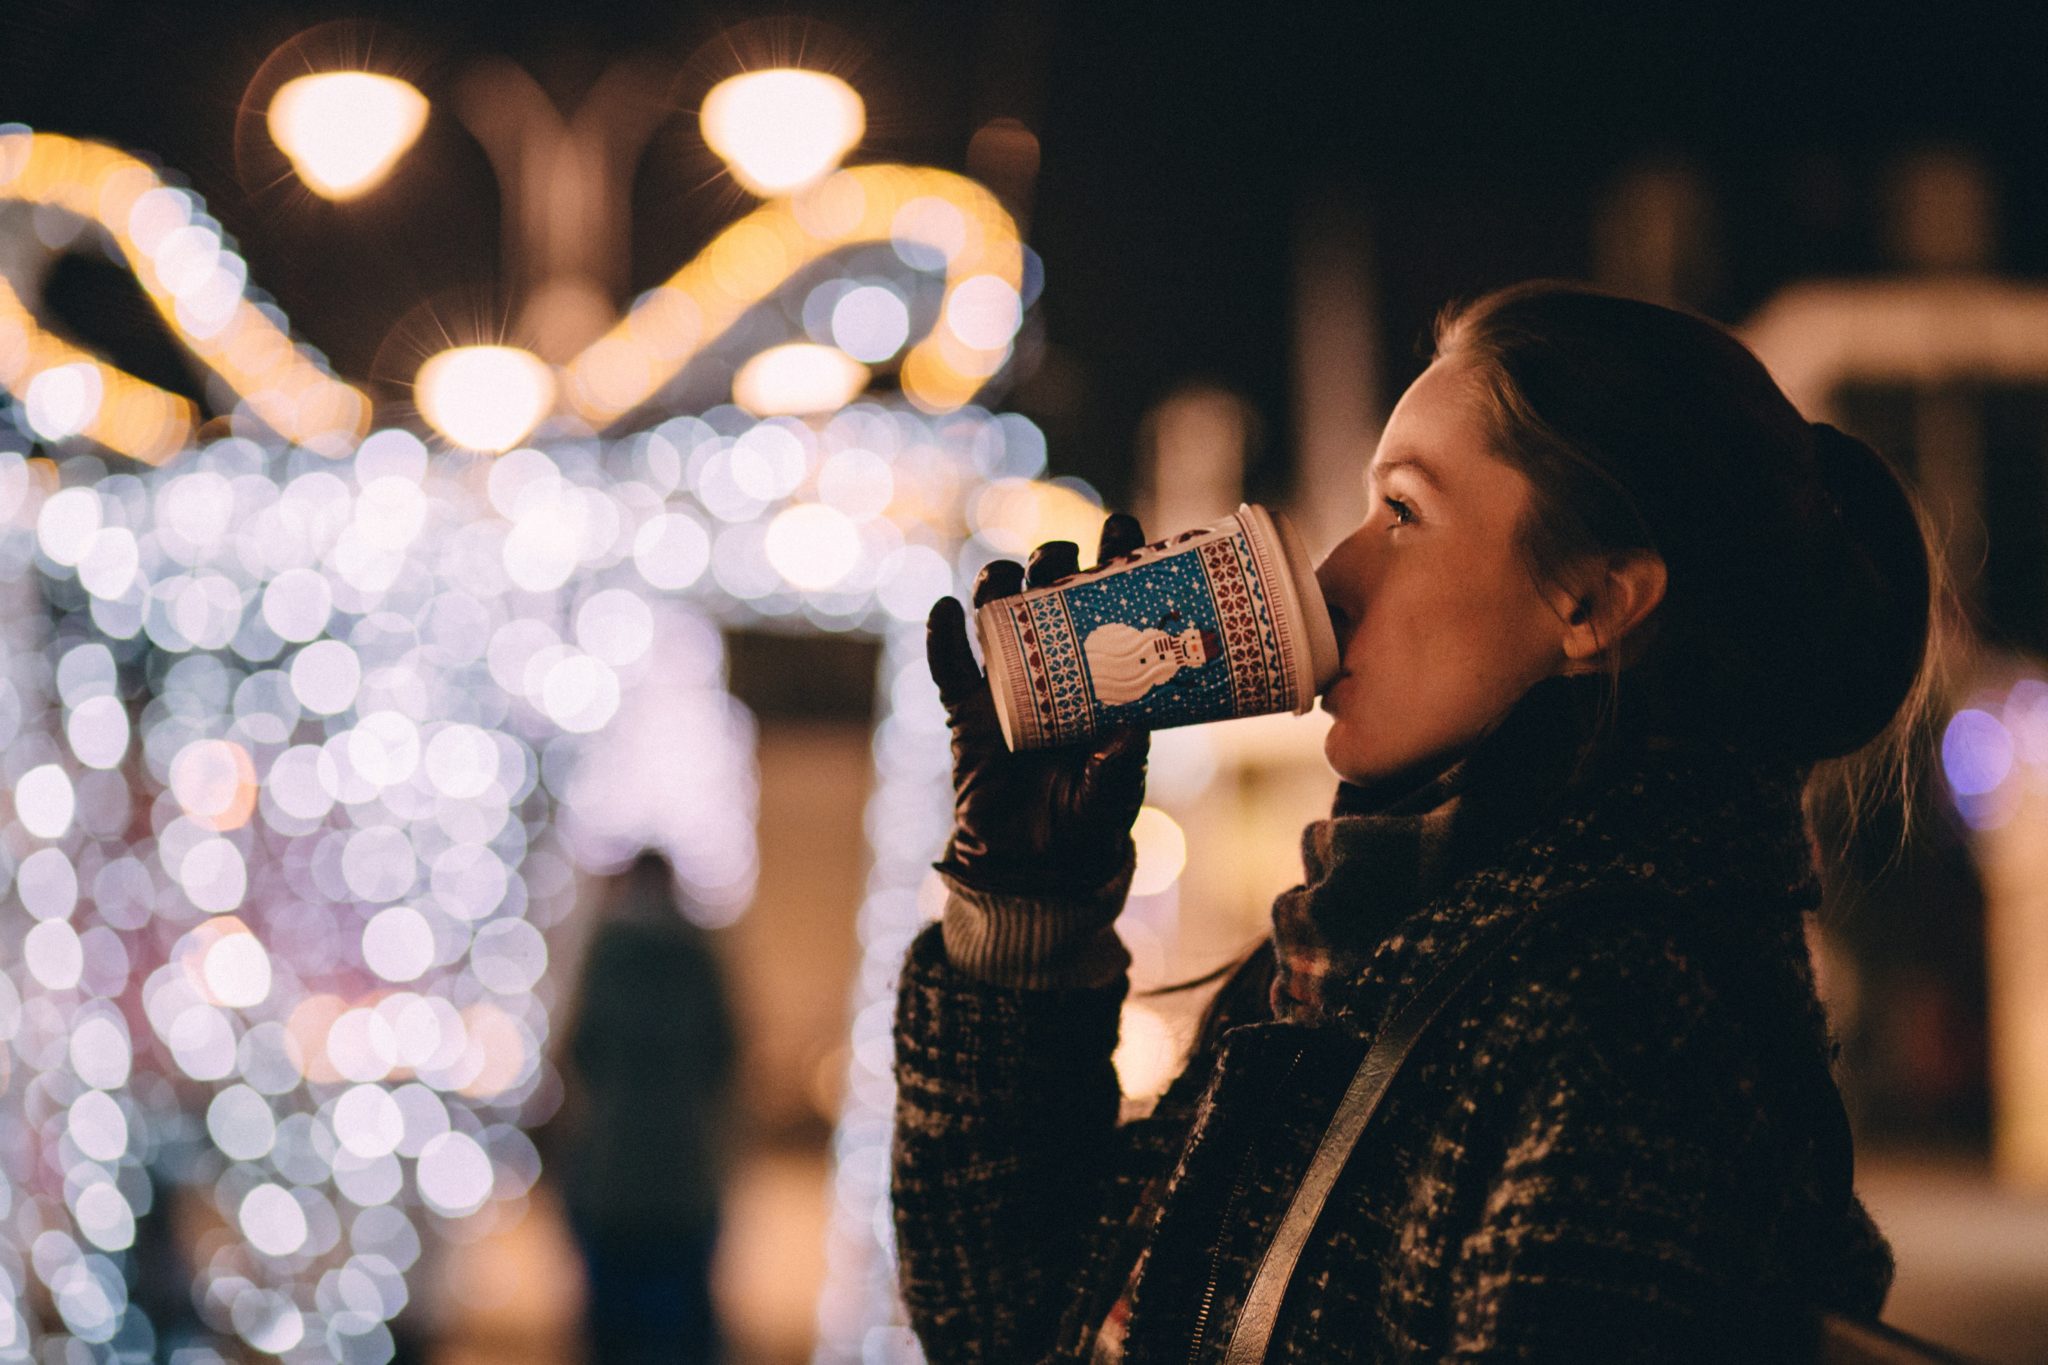 Dziewczyna ciepło ubrana w rękawiczkach i szaliku, pijąca grzane wino z kubeczka na markecie świątecznym w zimowej scenerii